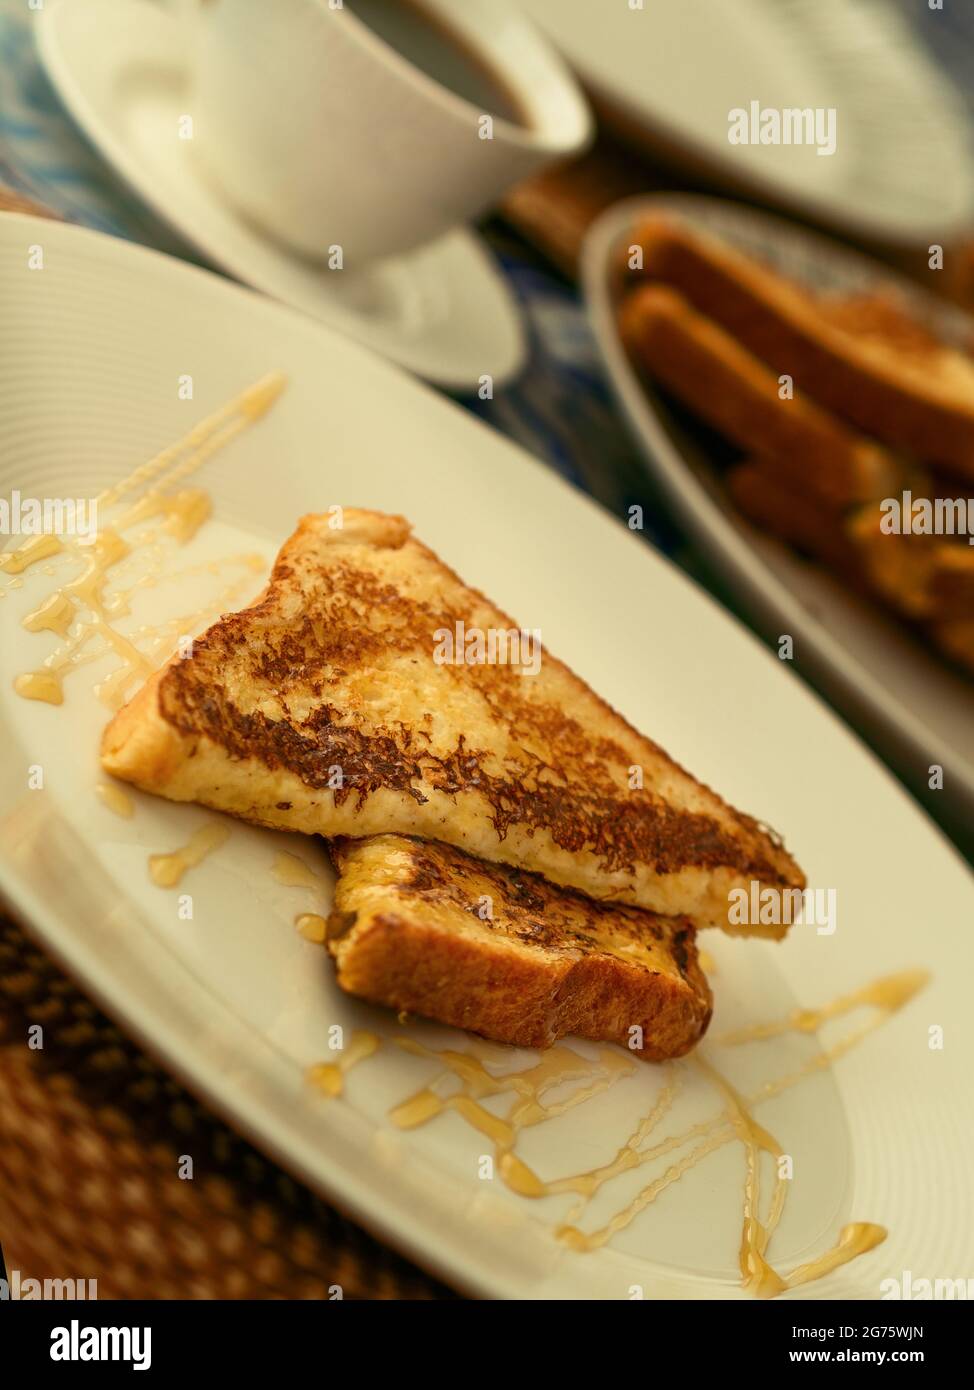 Due toast alla francese serviti con miele su un piatto bianco per colazione o brunch, sullo sfondo una tazza di caffè nero e una pila di toast alla francese. Foto Stock